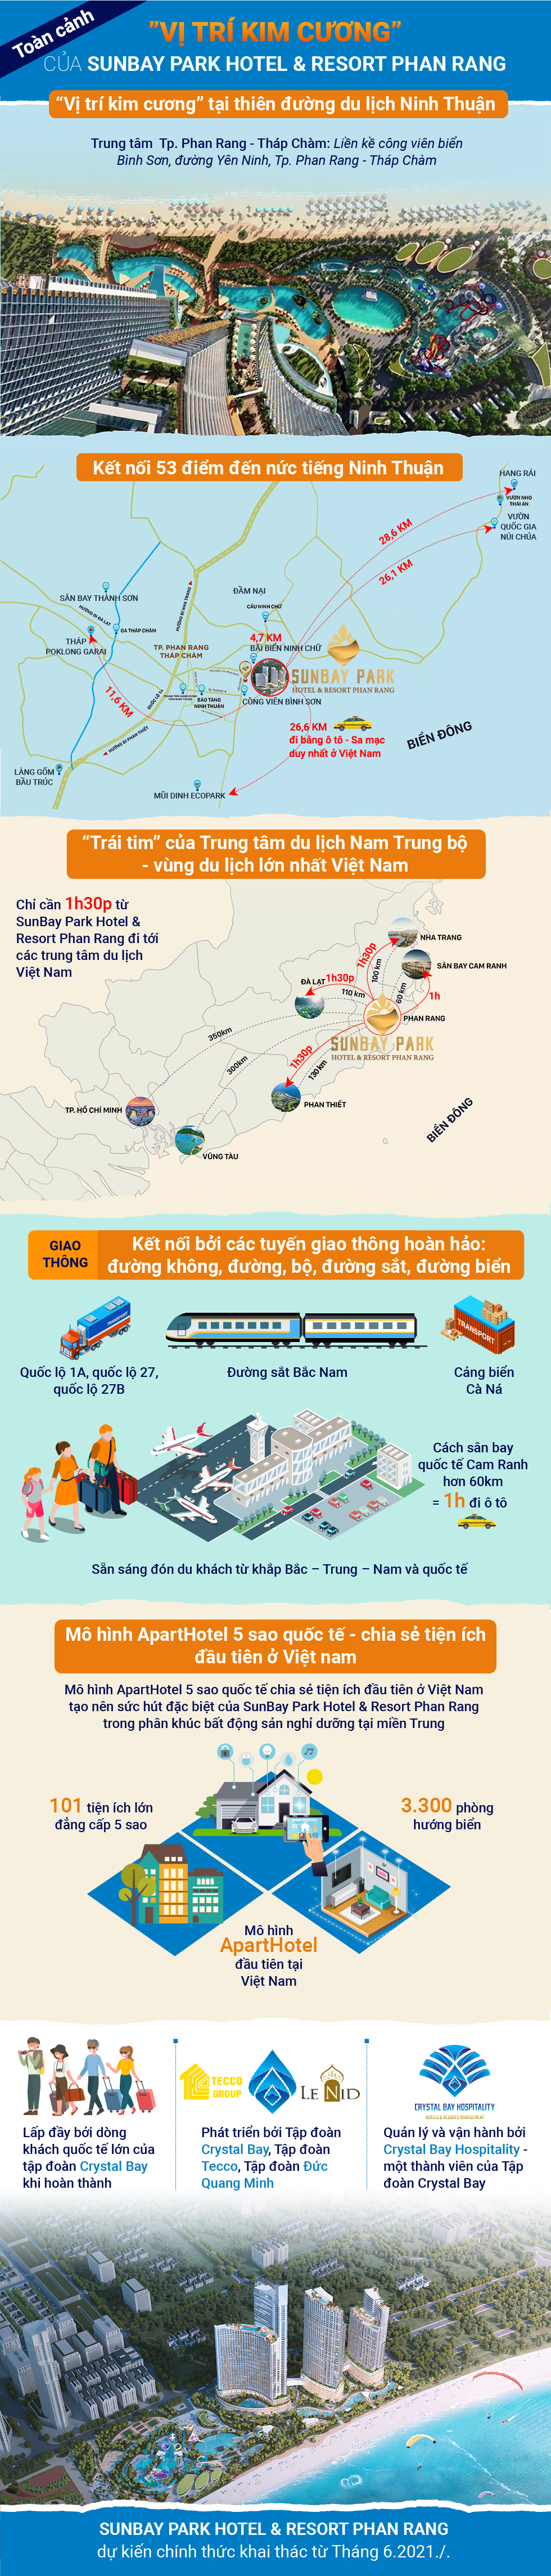 SunBay Park Hotel & Resort Phan Rang: Những “gạch đầu dòng” làm nên vị trí kim cương